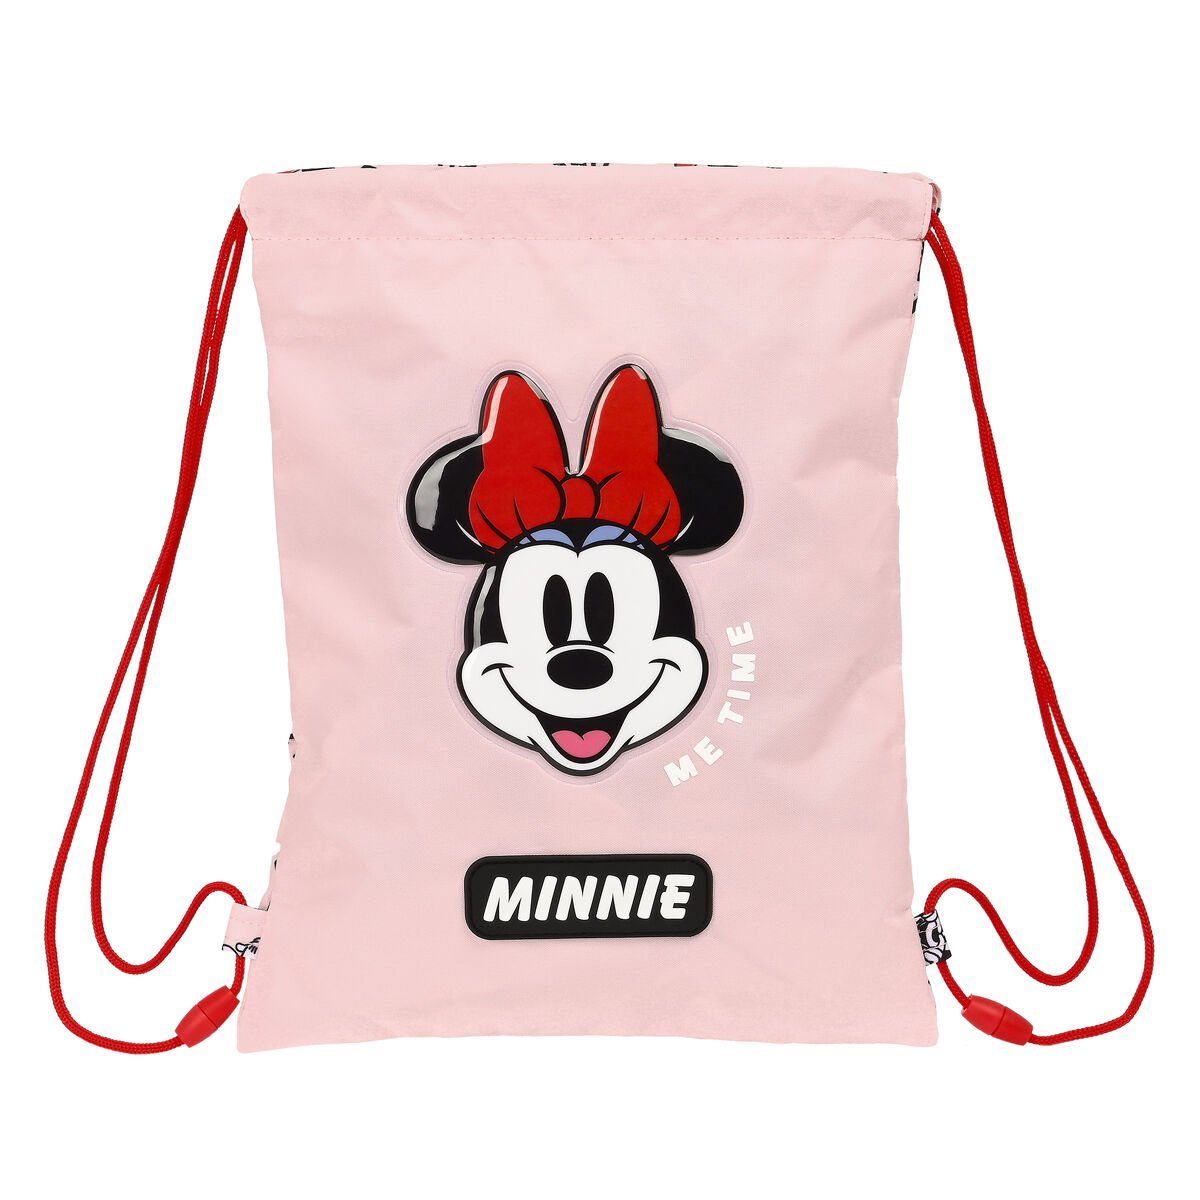 x Rucksack Minnie Mouse x Rucksacktasche Me 26 Rosa mit Minnie Bändern cm Mouse time Disney 34 1